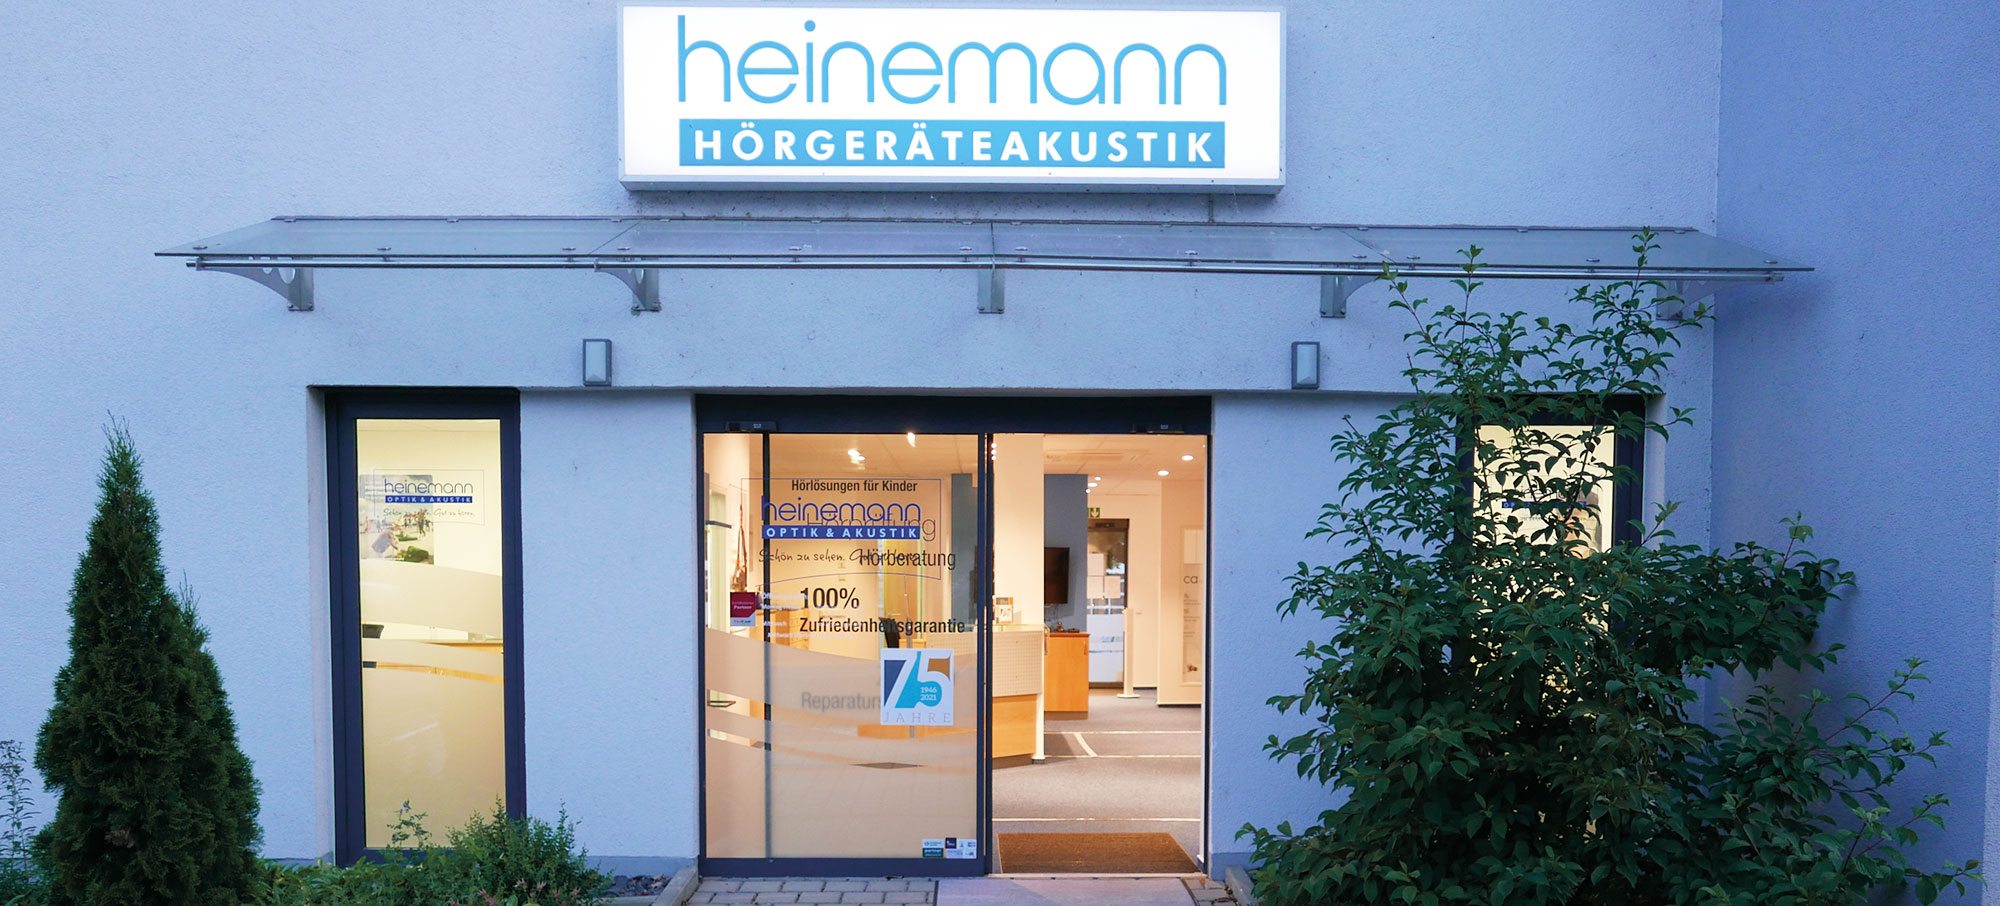 Akustik Heinemann im Ärztehaus in Wetzlar-Hermannstein